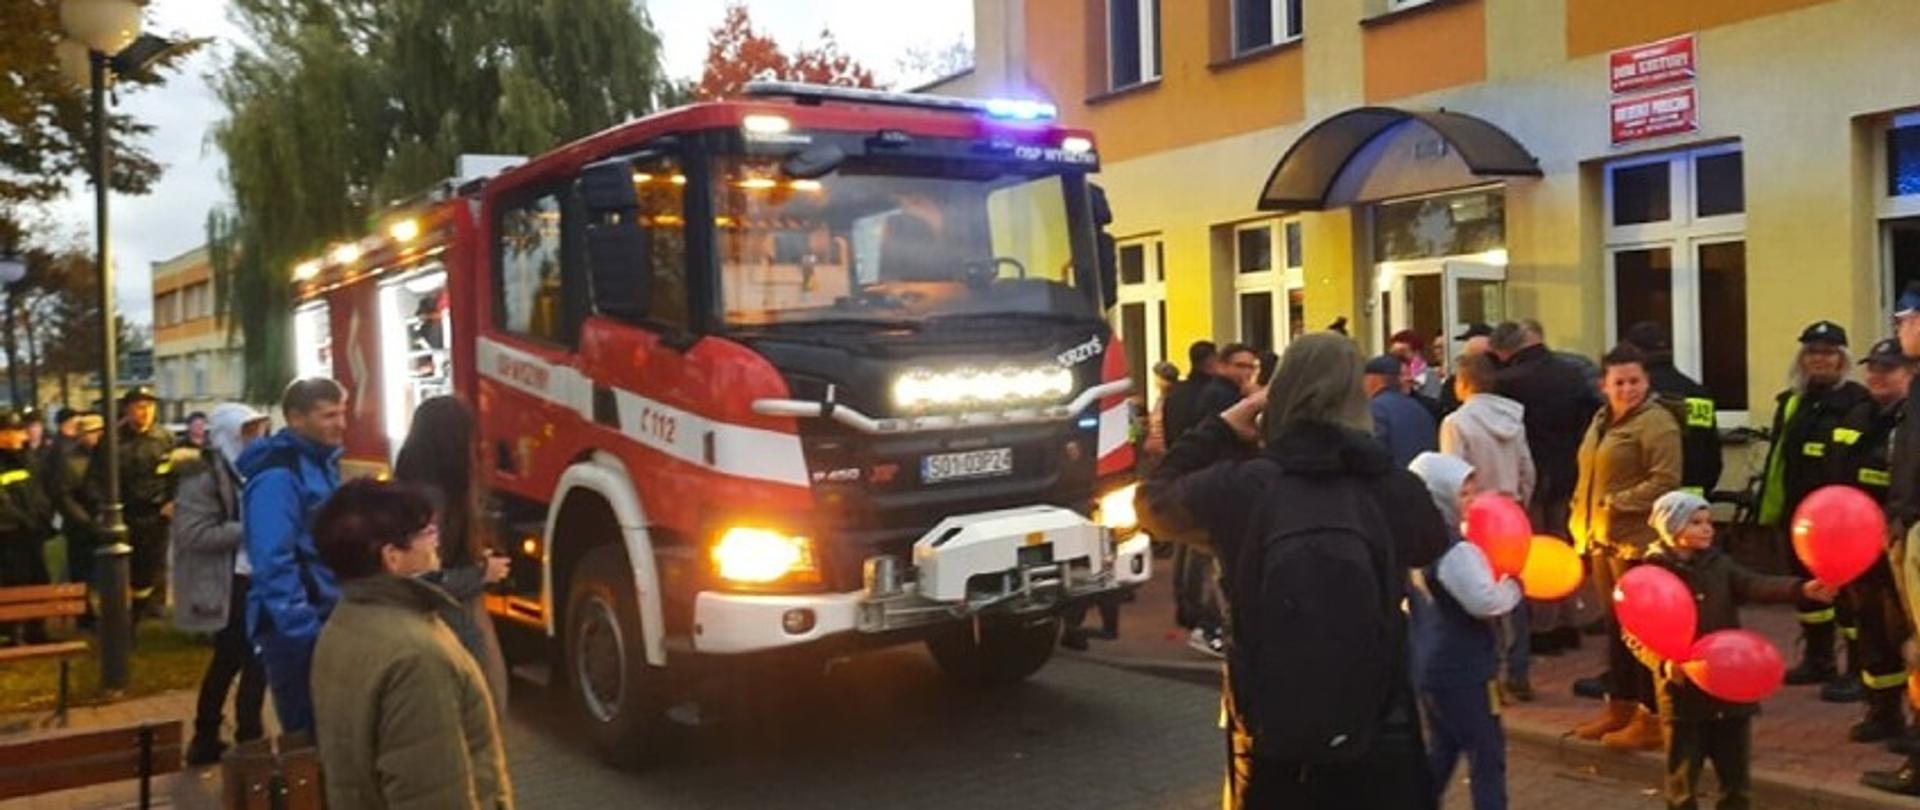 Na zdjęciu widać nowy wóz ratowniczy gaśniczy marki SCANIA oraz mieszkańców wsi Wyszyny, a także strażaków z jednostek OSP z terenu Gminy Budzyń, którzy fotografują oraz oglądają pojazd.